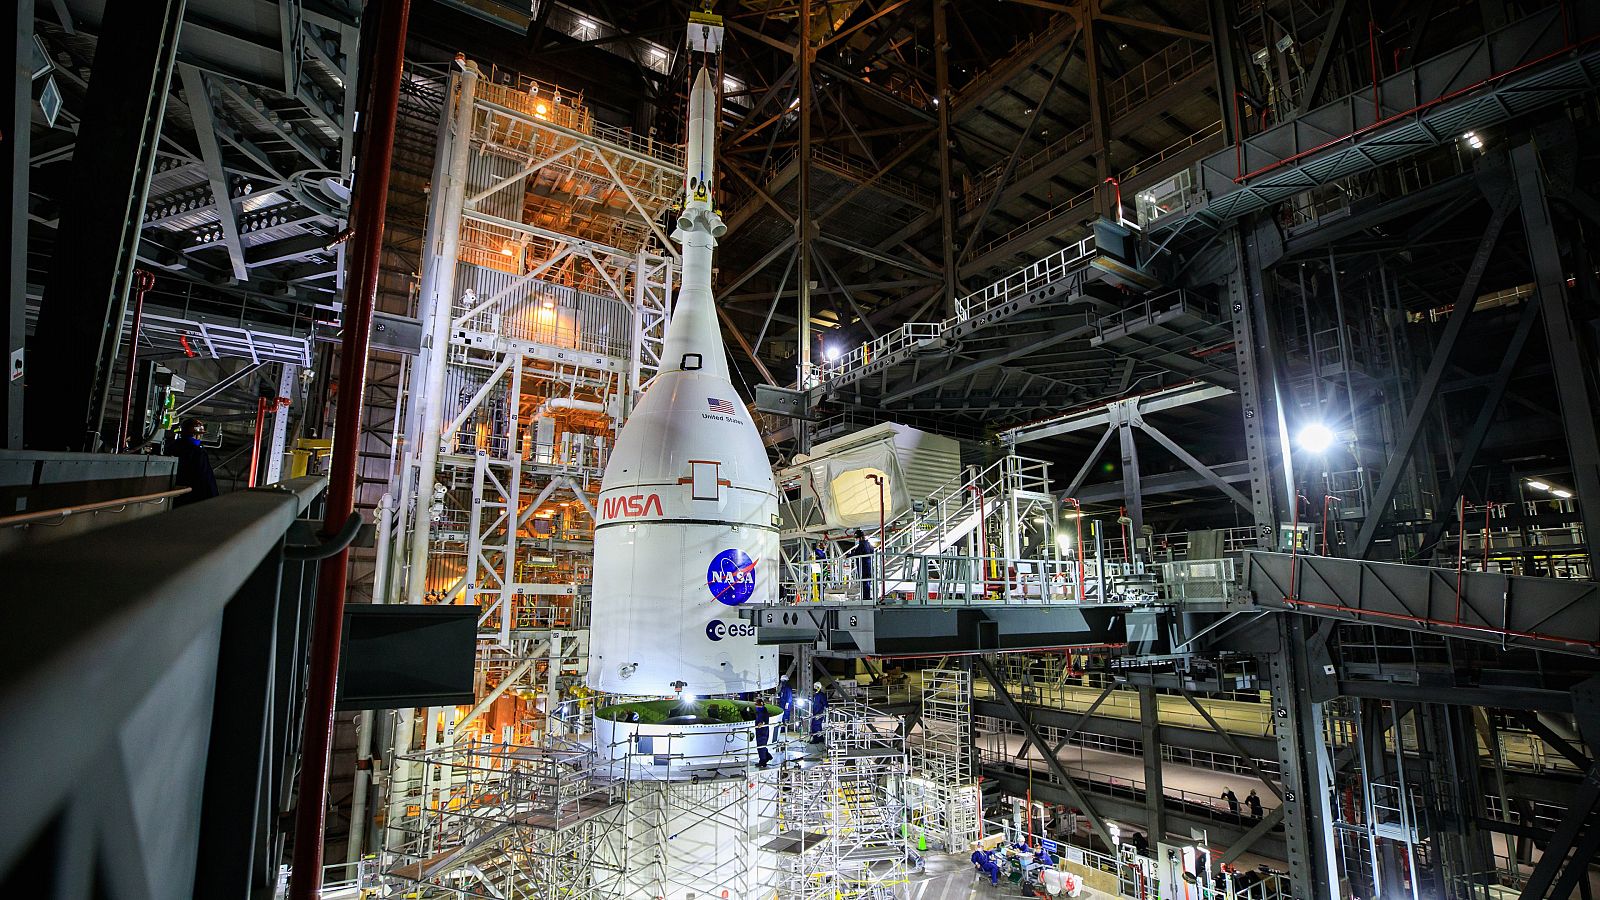 La nave espacial Orion, que participará en la misión Artemis I, completamente ensamblada.